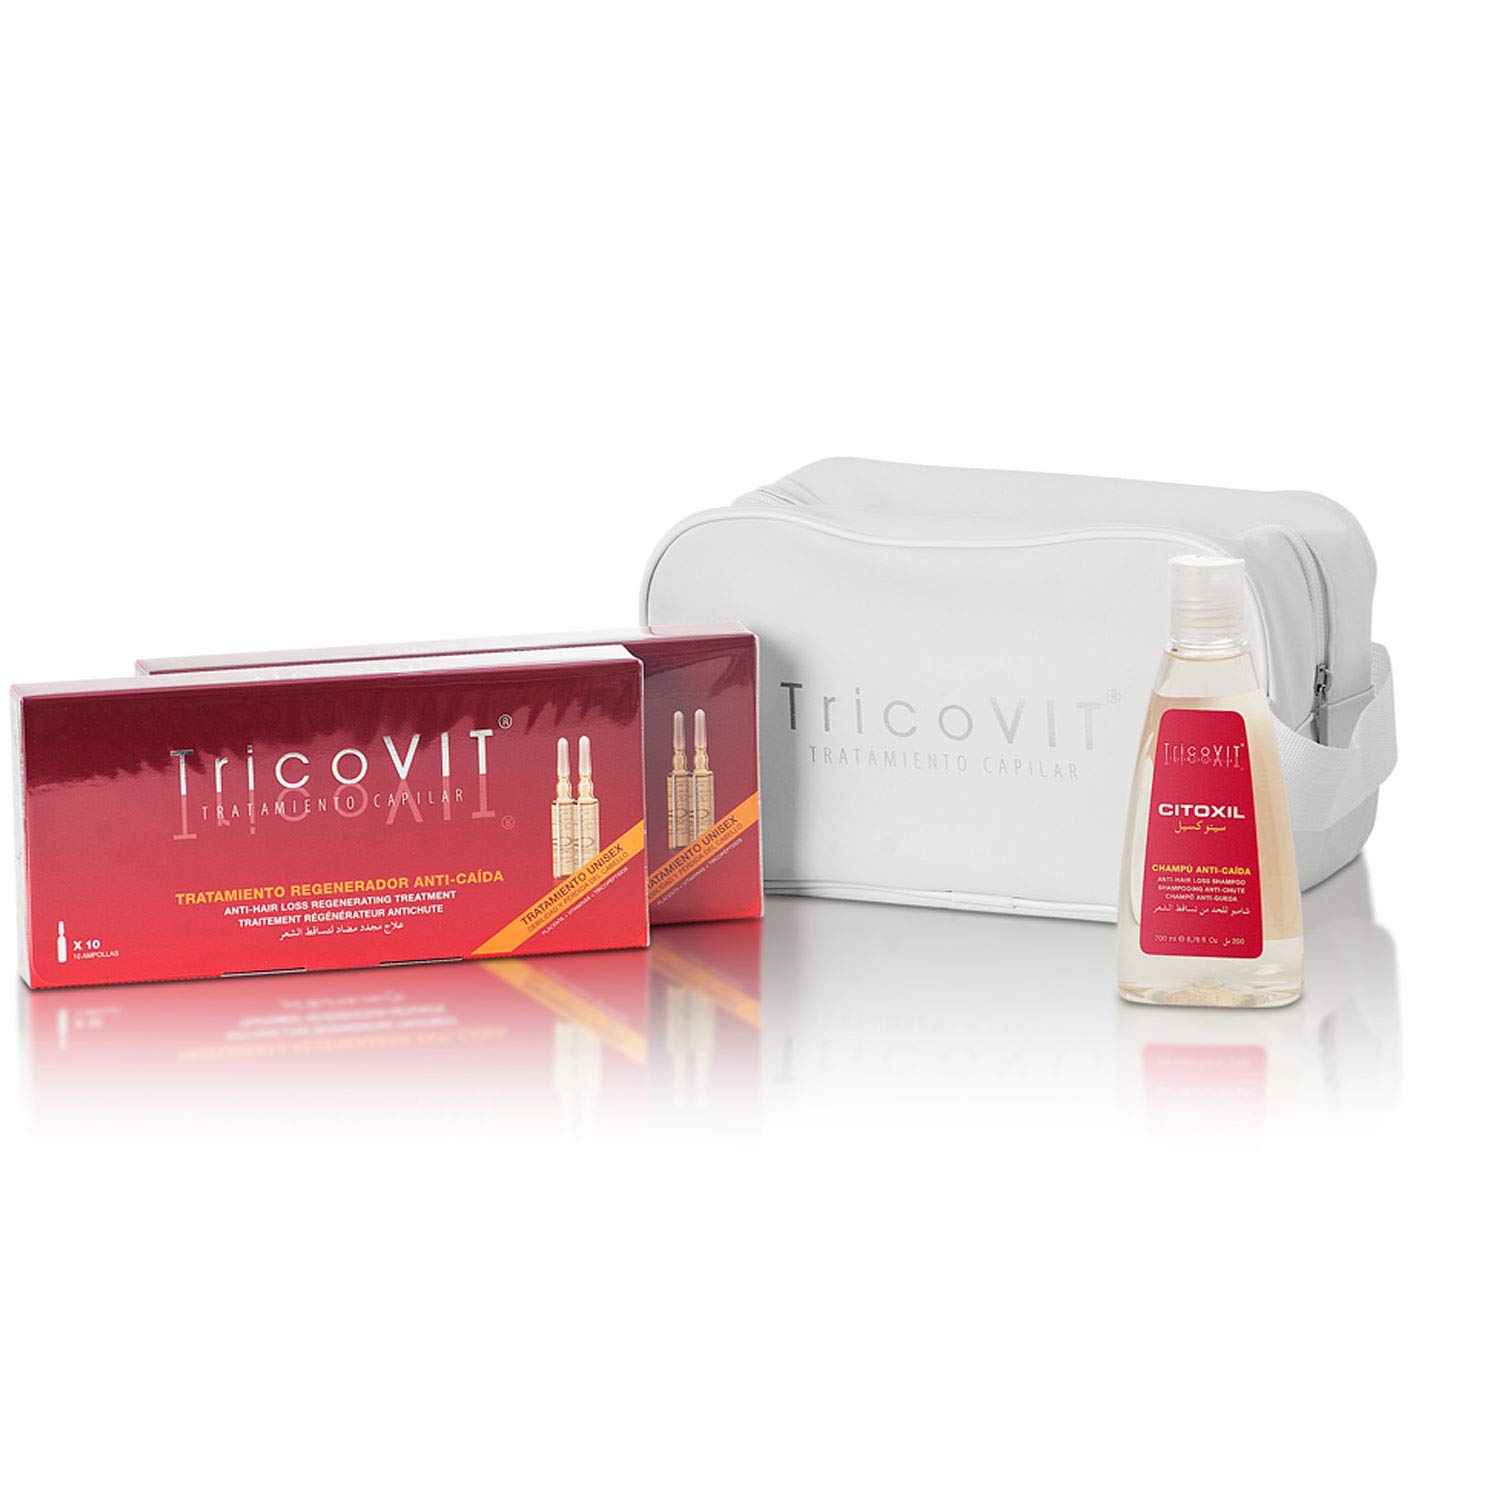 TricoVIT Haarausfall-Behandlung, 20 Ampullen gegen Haarausfall + Anti-Haarausfall-Shampoo (200 ml) + Kosmetiktasche, reduziert Haarausfall, erhöht die Dichte Ihrer Haare, für Männer und Frauen